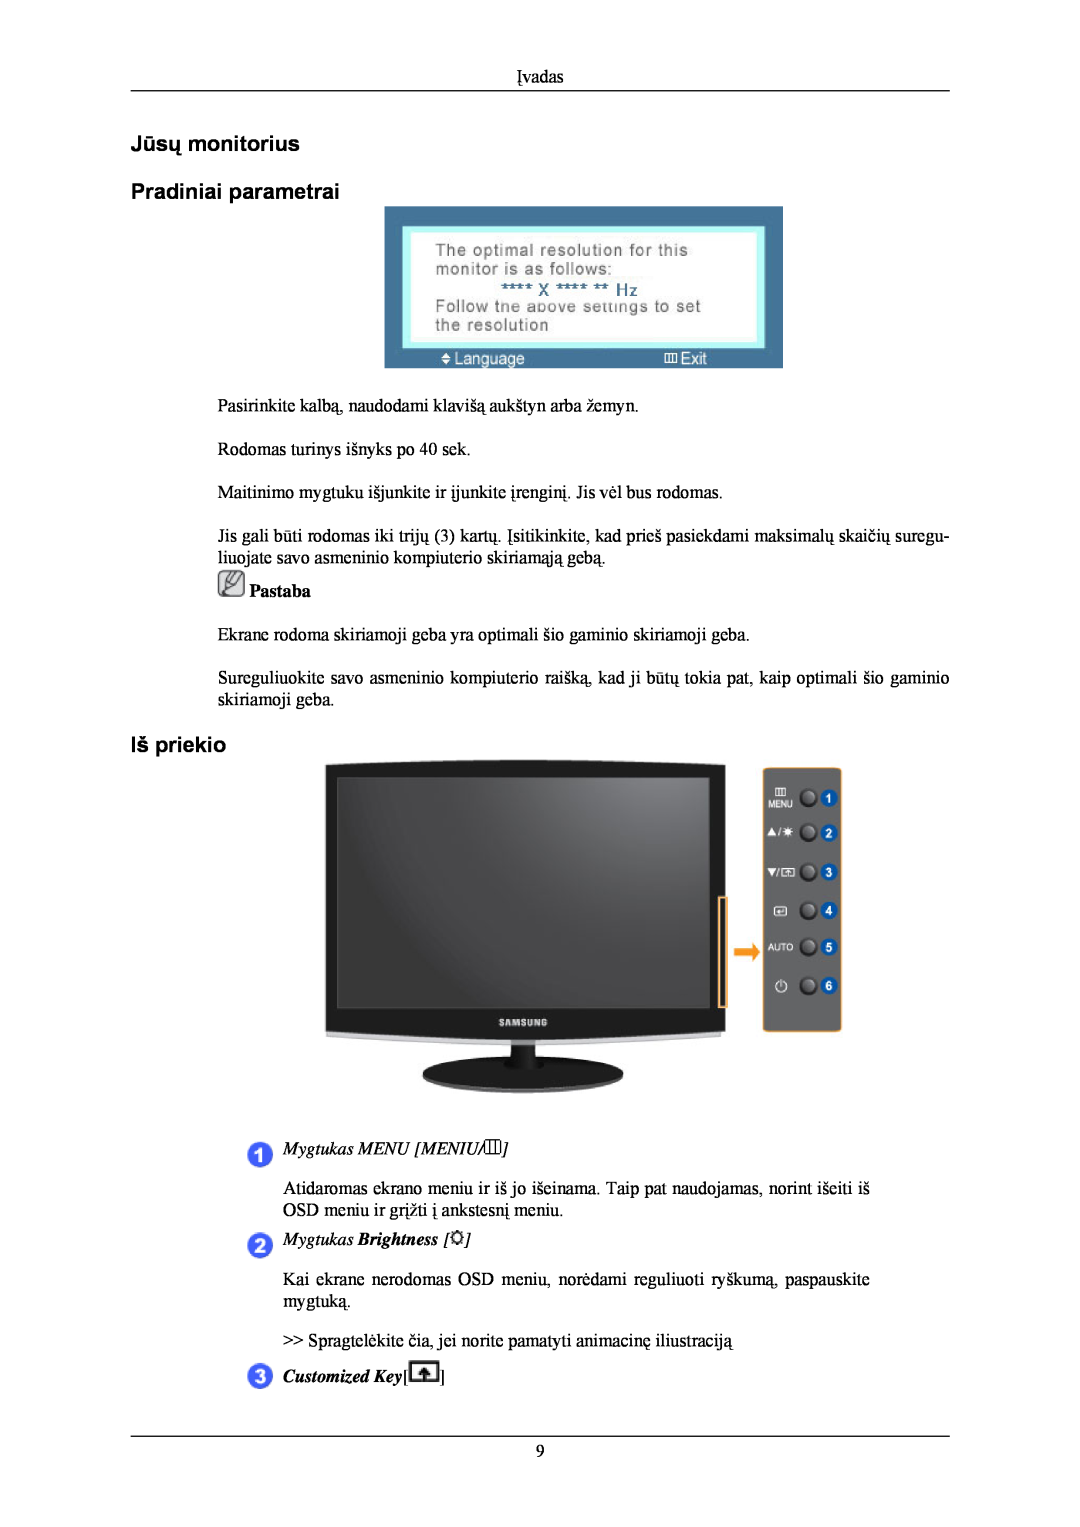 Samsung LS24CMKKFV/EN manual Jūsų monitorius Pradiniai parametrai, Iš priekio, Customized Key 